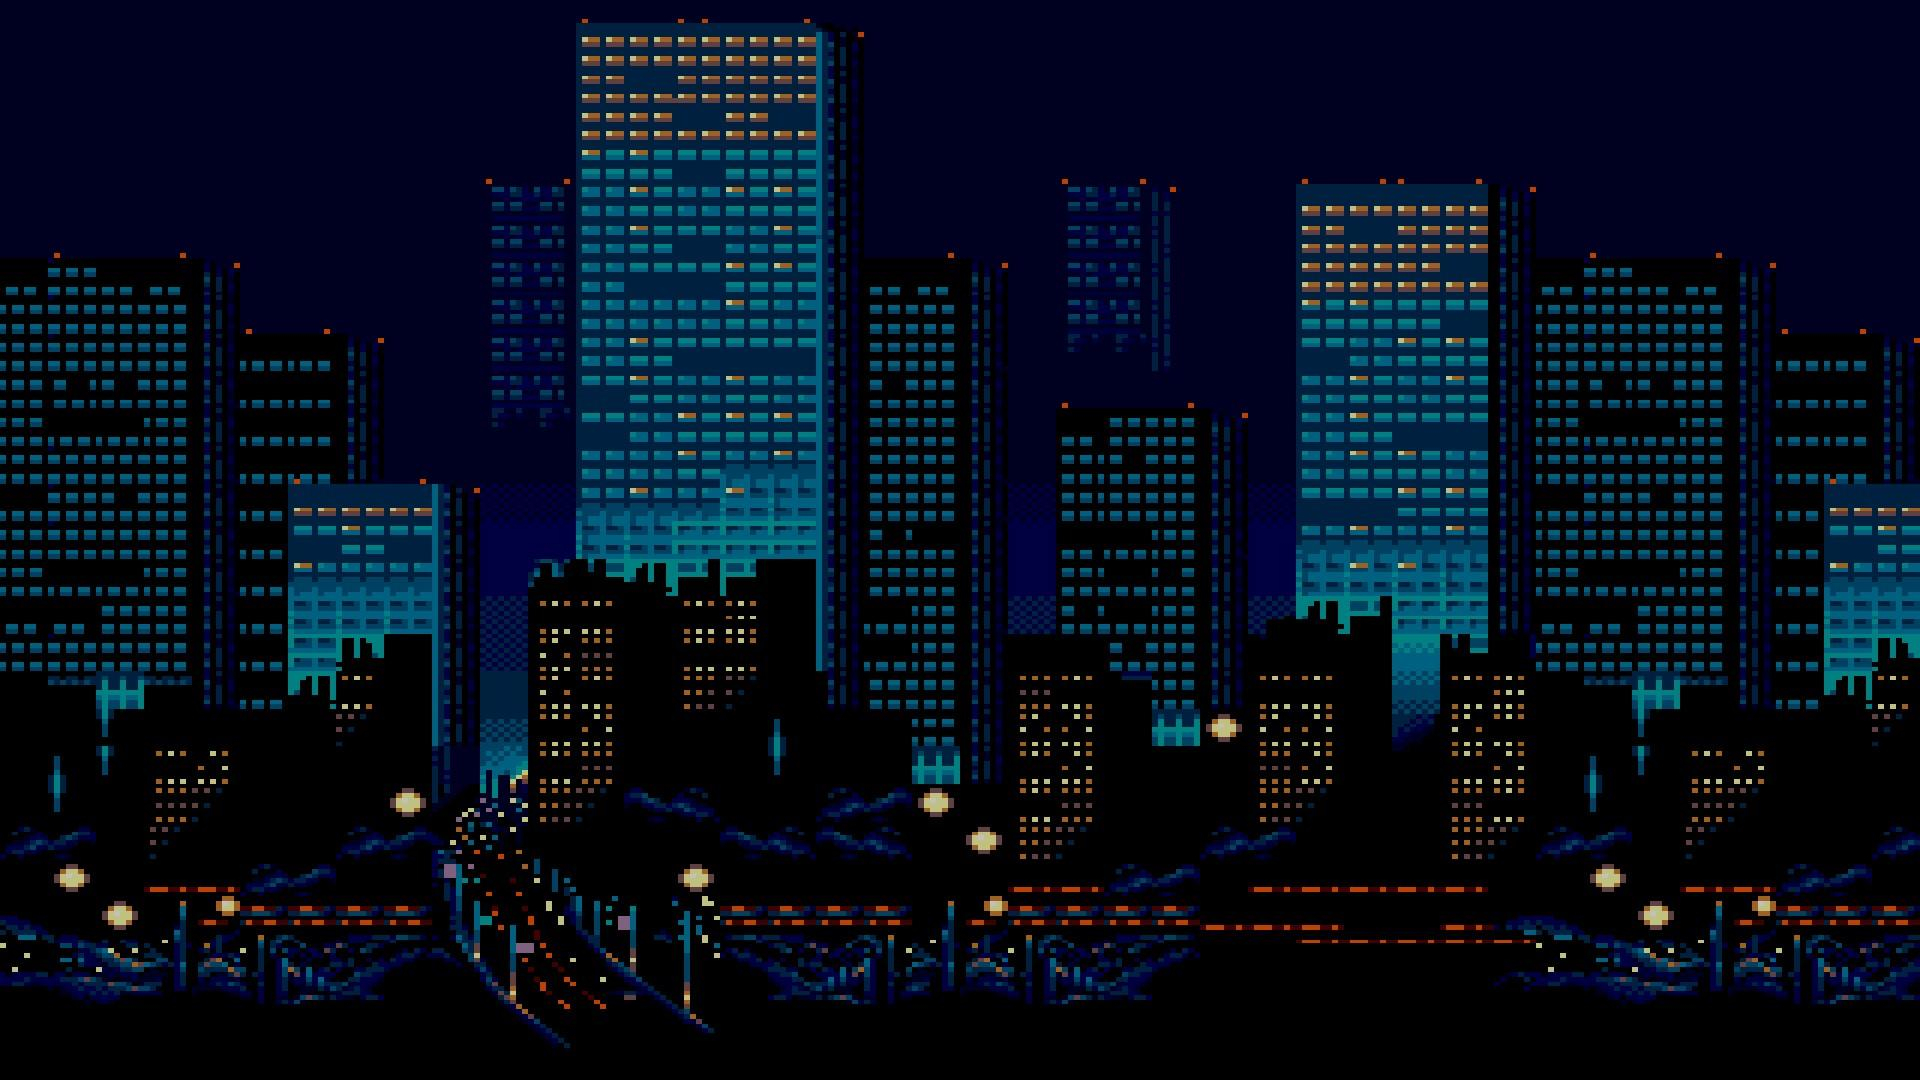 1920x1080 City Pixel Art Wallpapers Top Free City Pixel Art Backgrounds